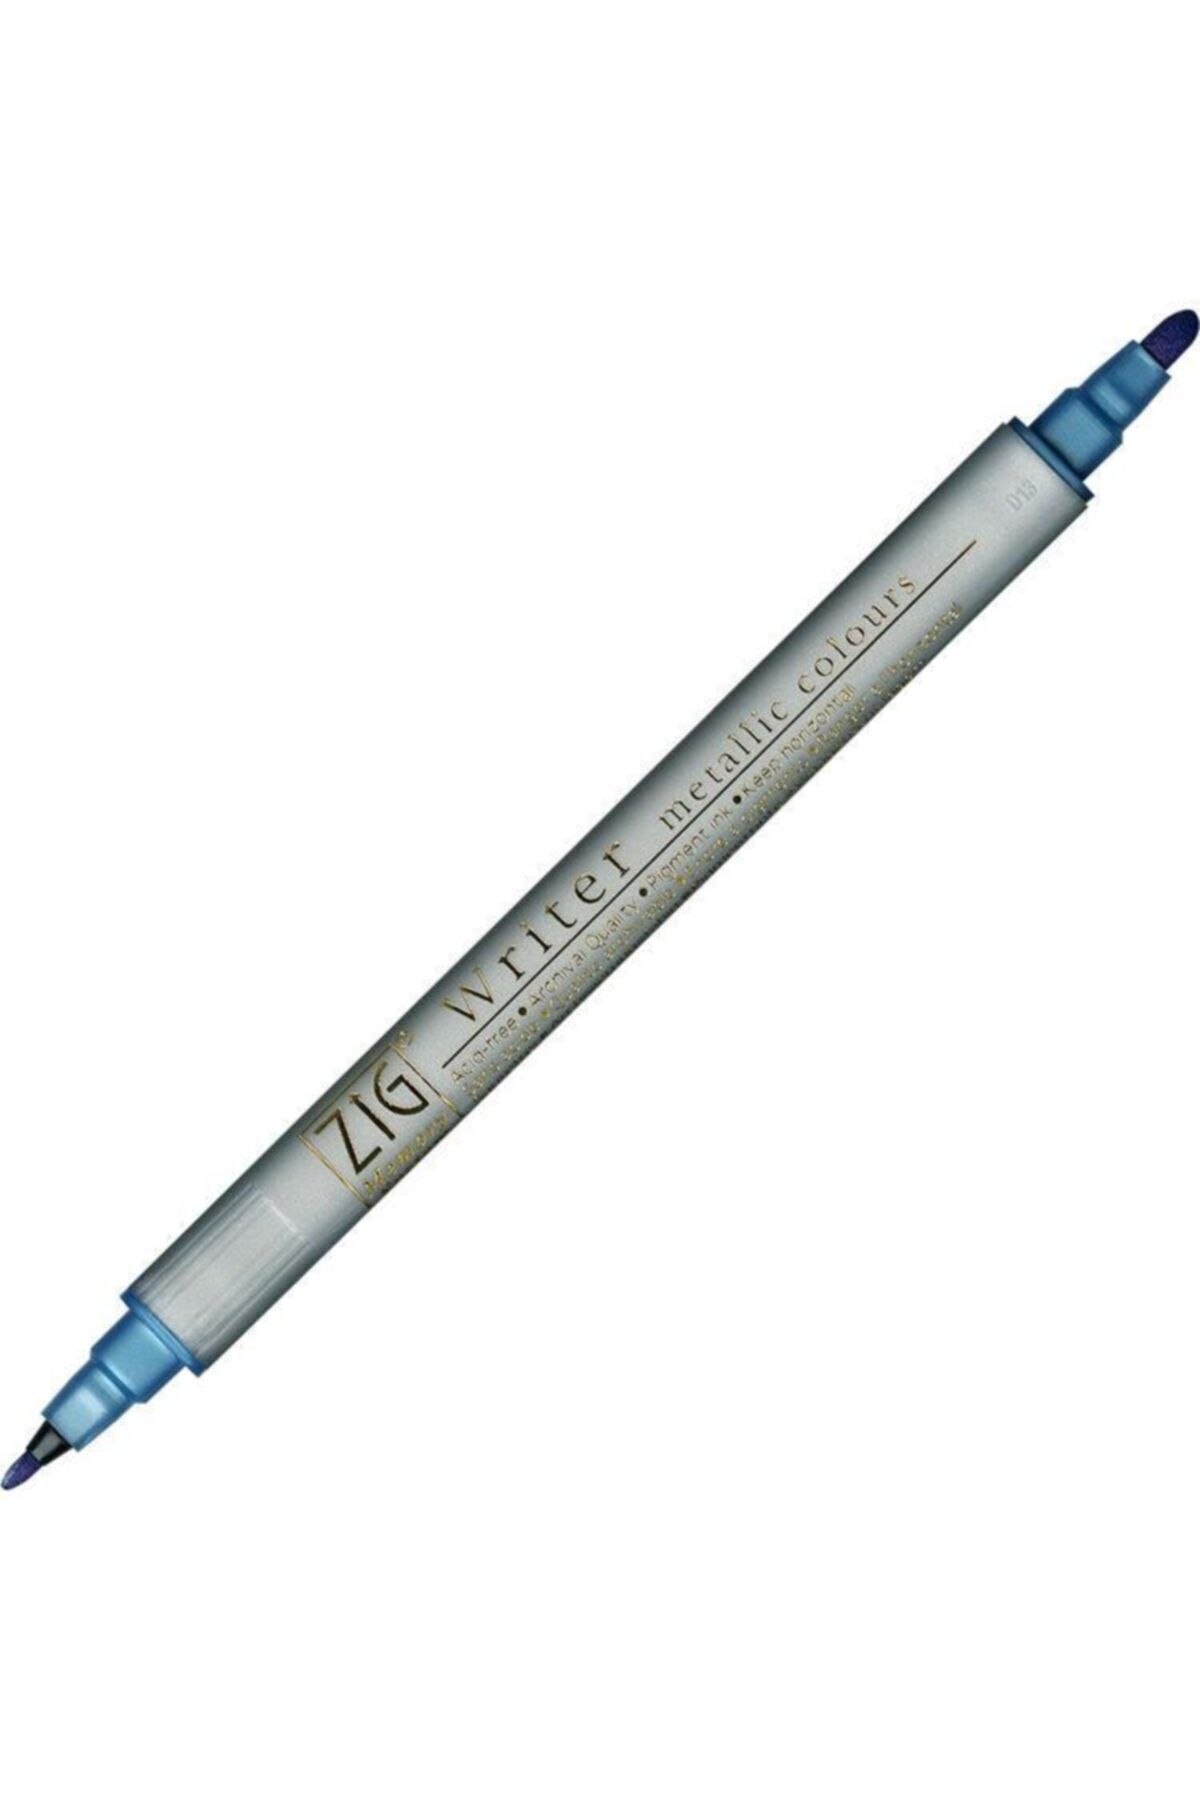 Zig Metalik Ms-8000 125 Blue Çift Taraflı Davetiye Kalemi